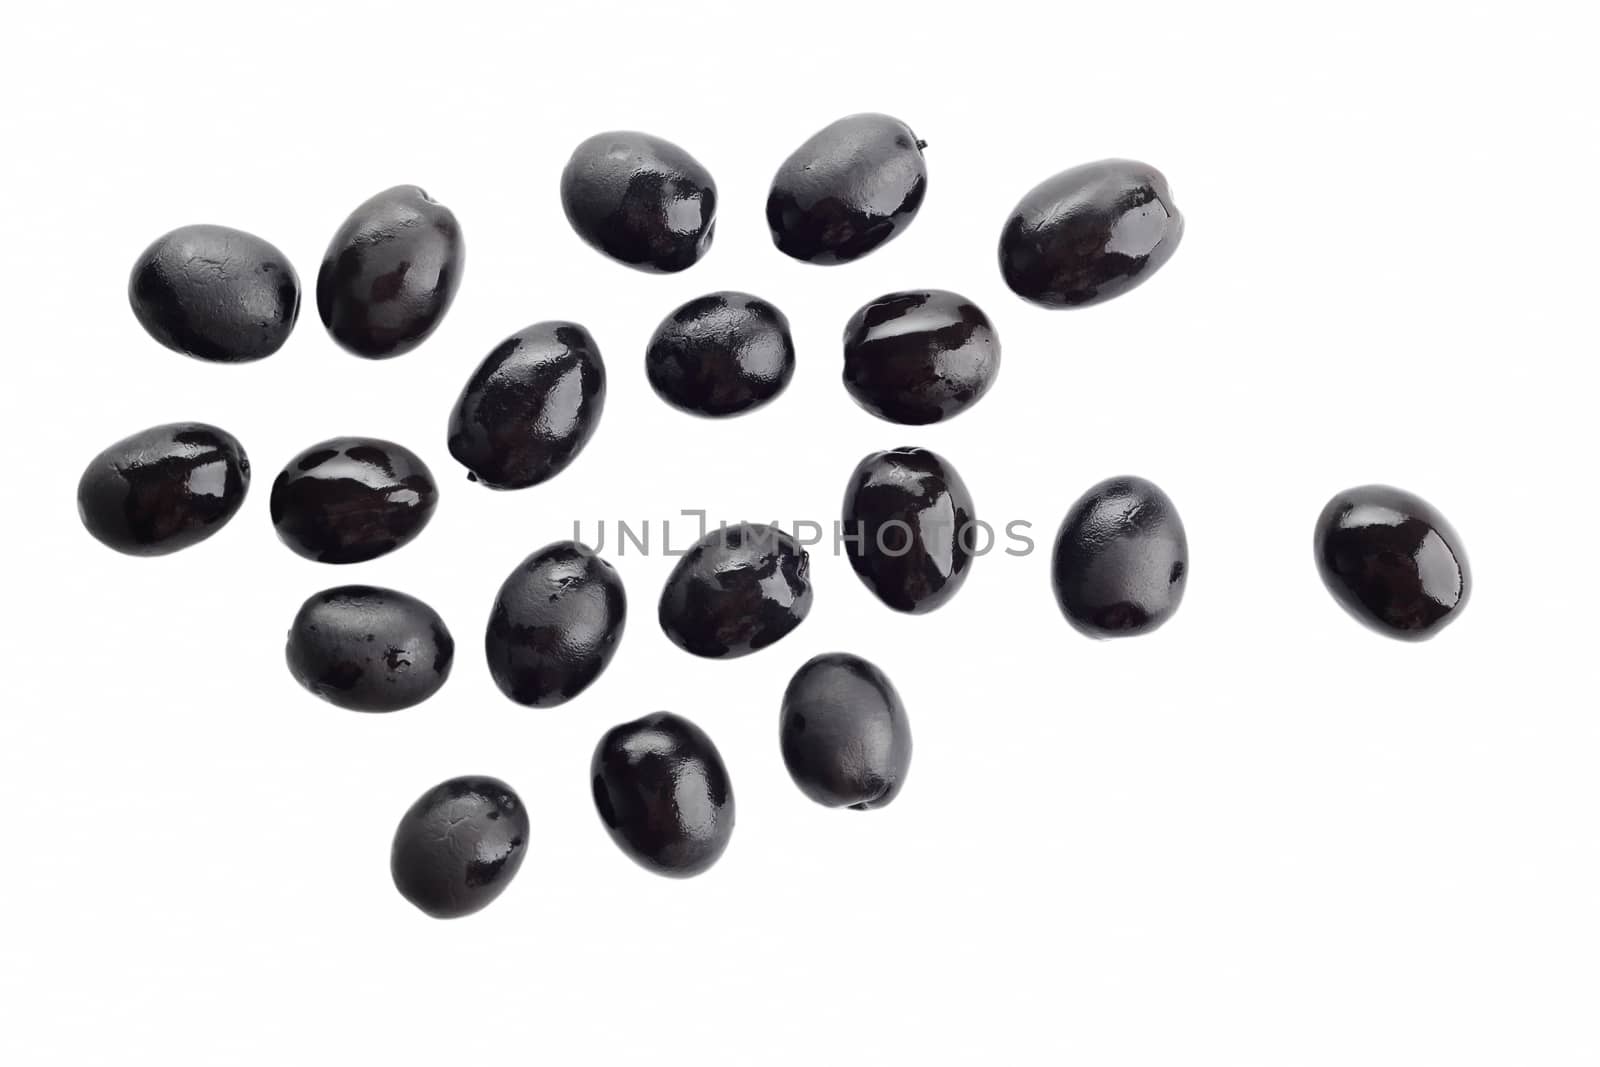 Black olives by marynamyshkovska